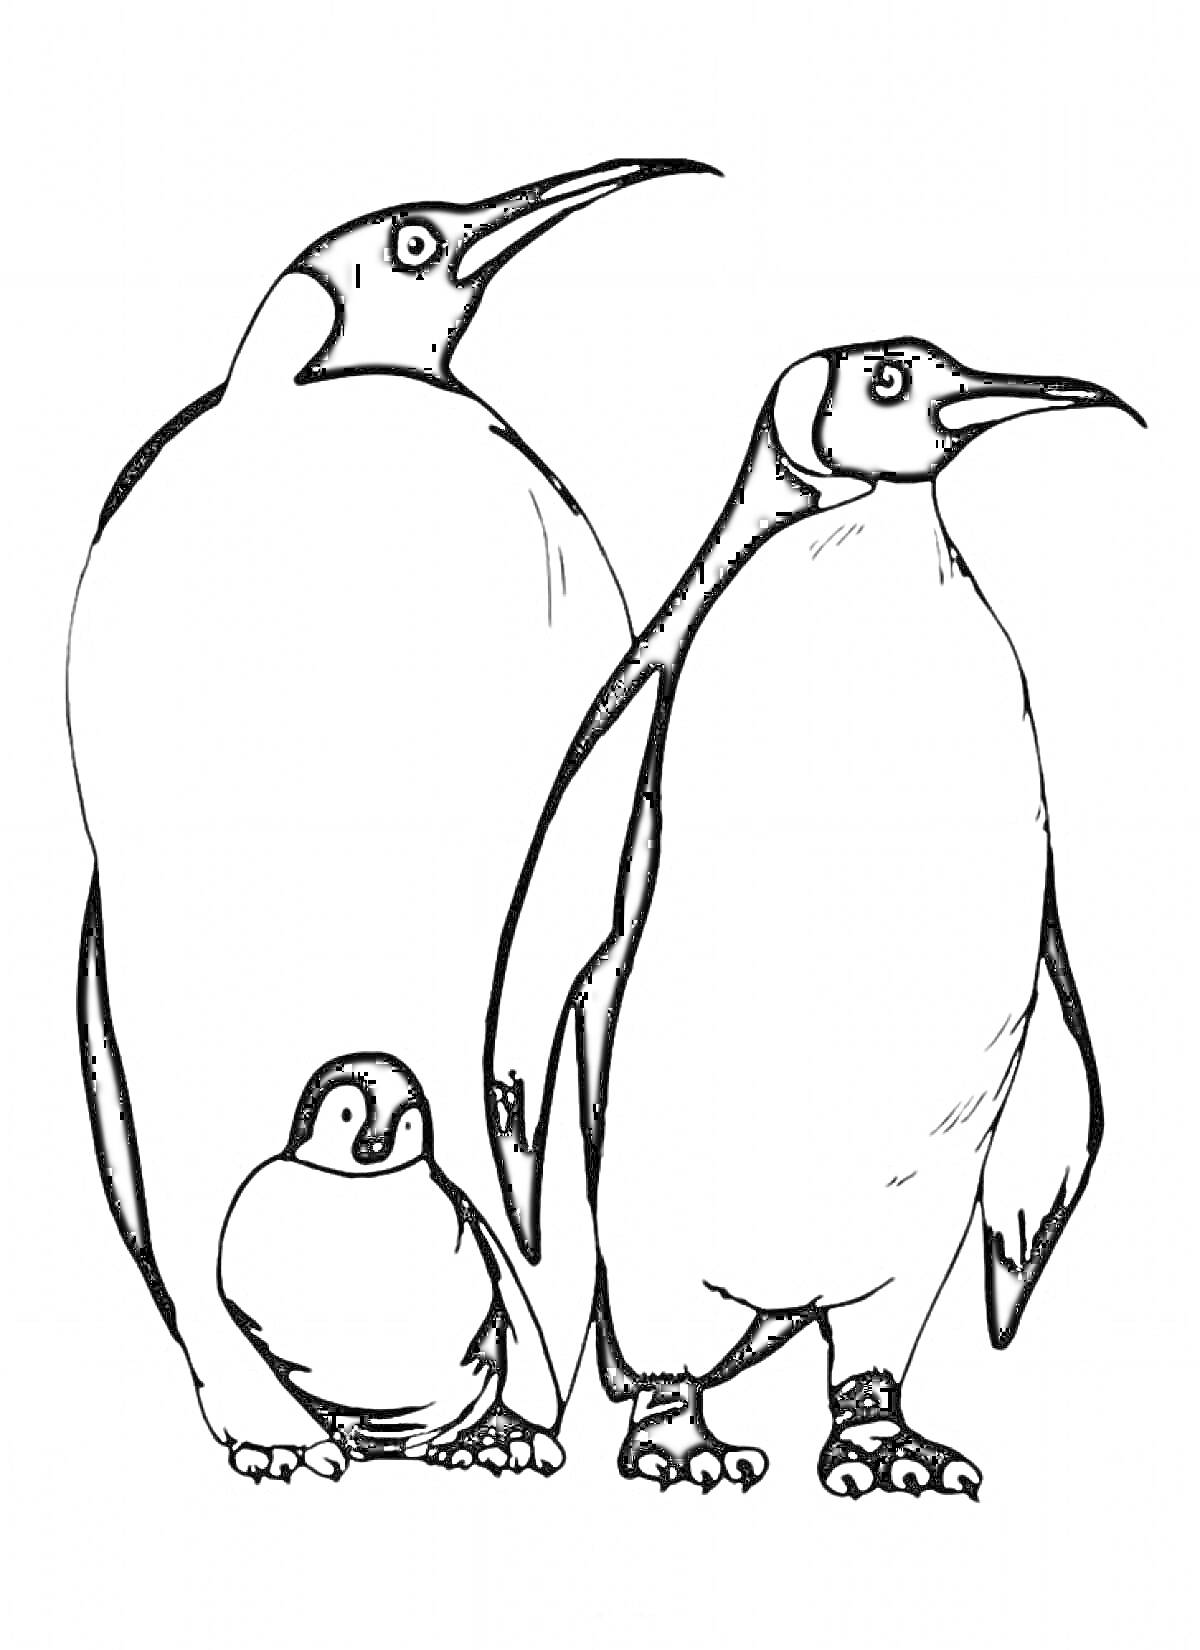 РаскраскаСемья: взрослые пингвины и пингвинёнок